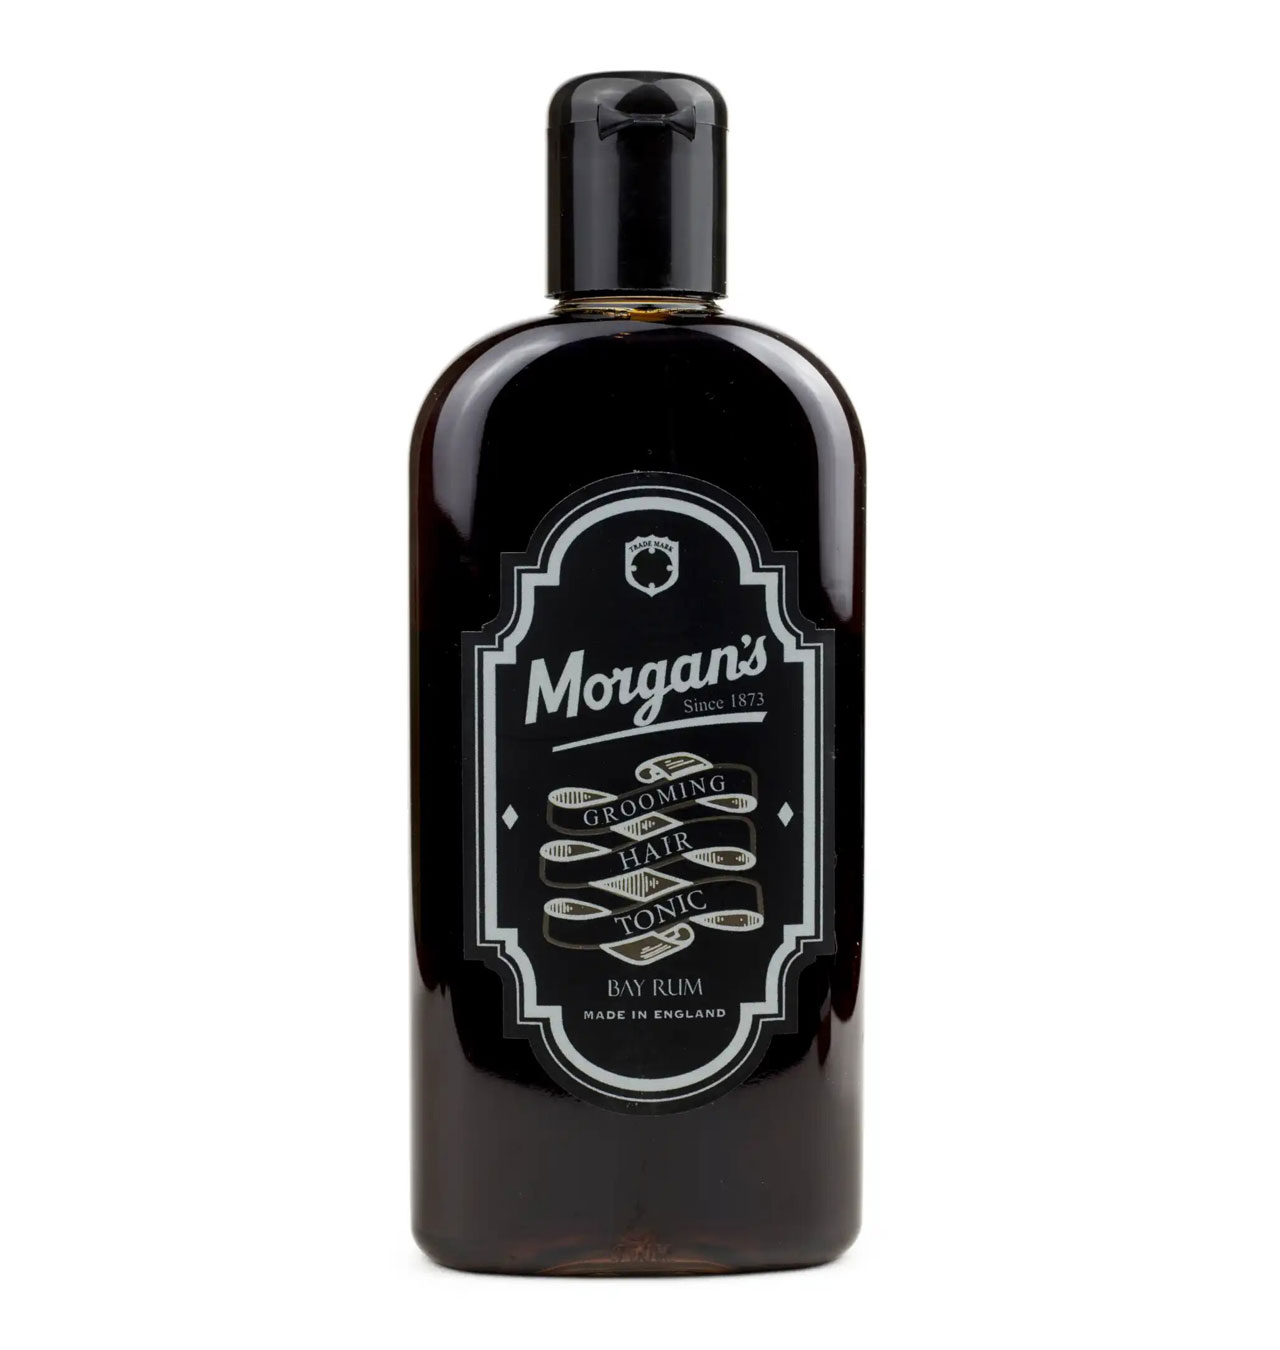 Morgans - Bay Rum Grooming Hair Tonic (250 ml)